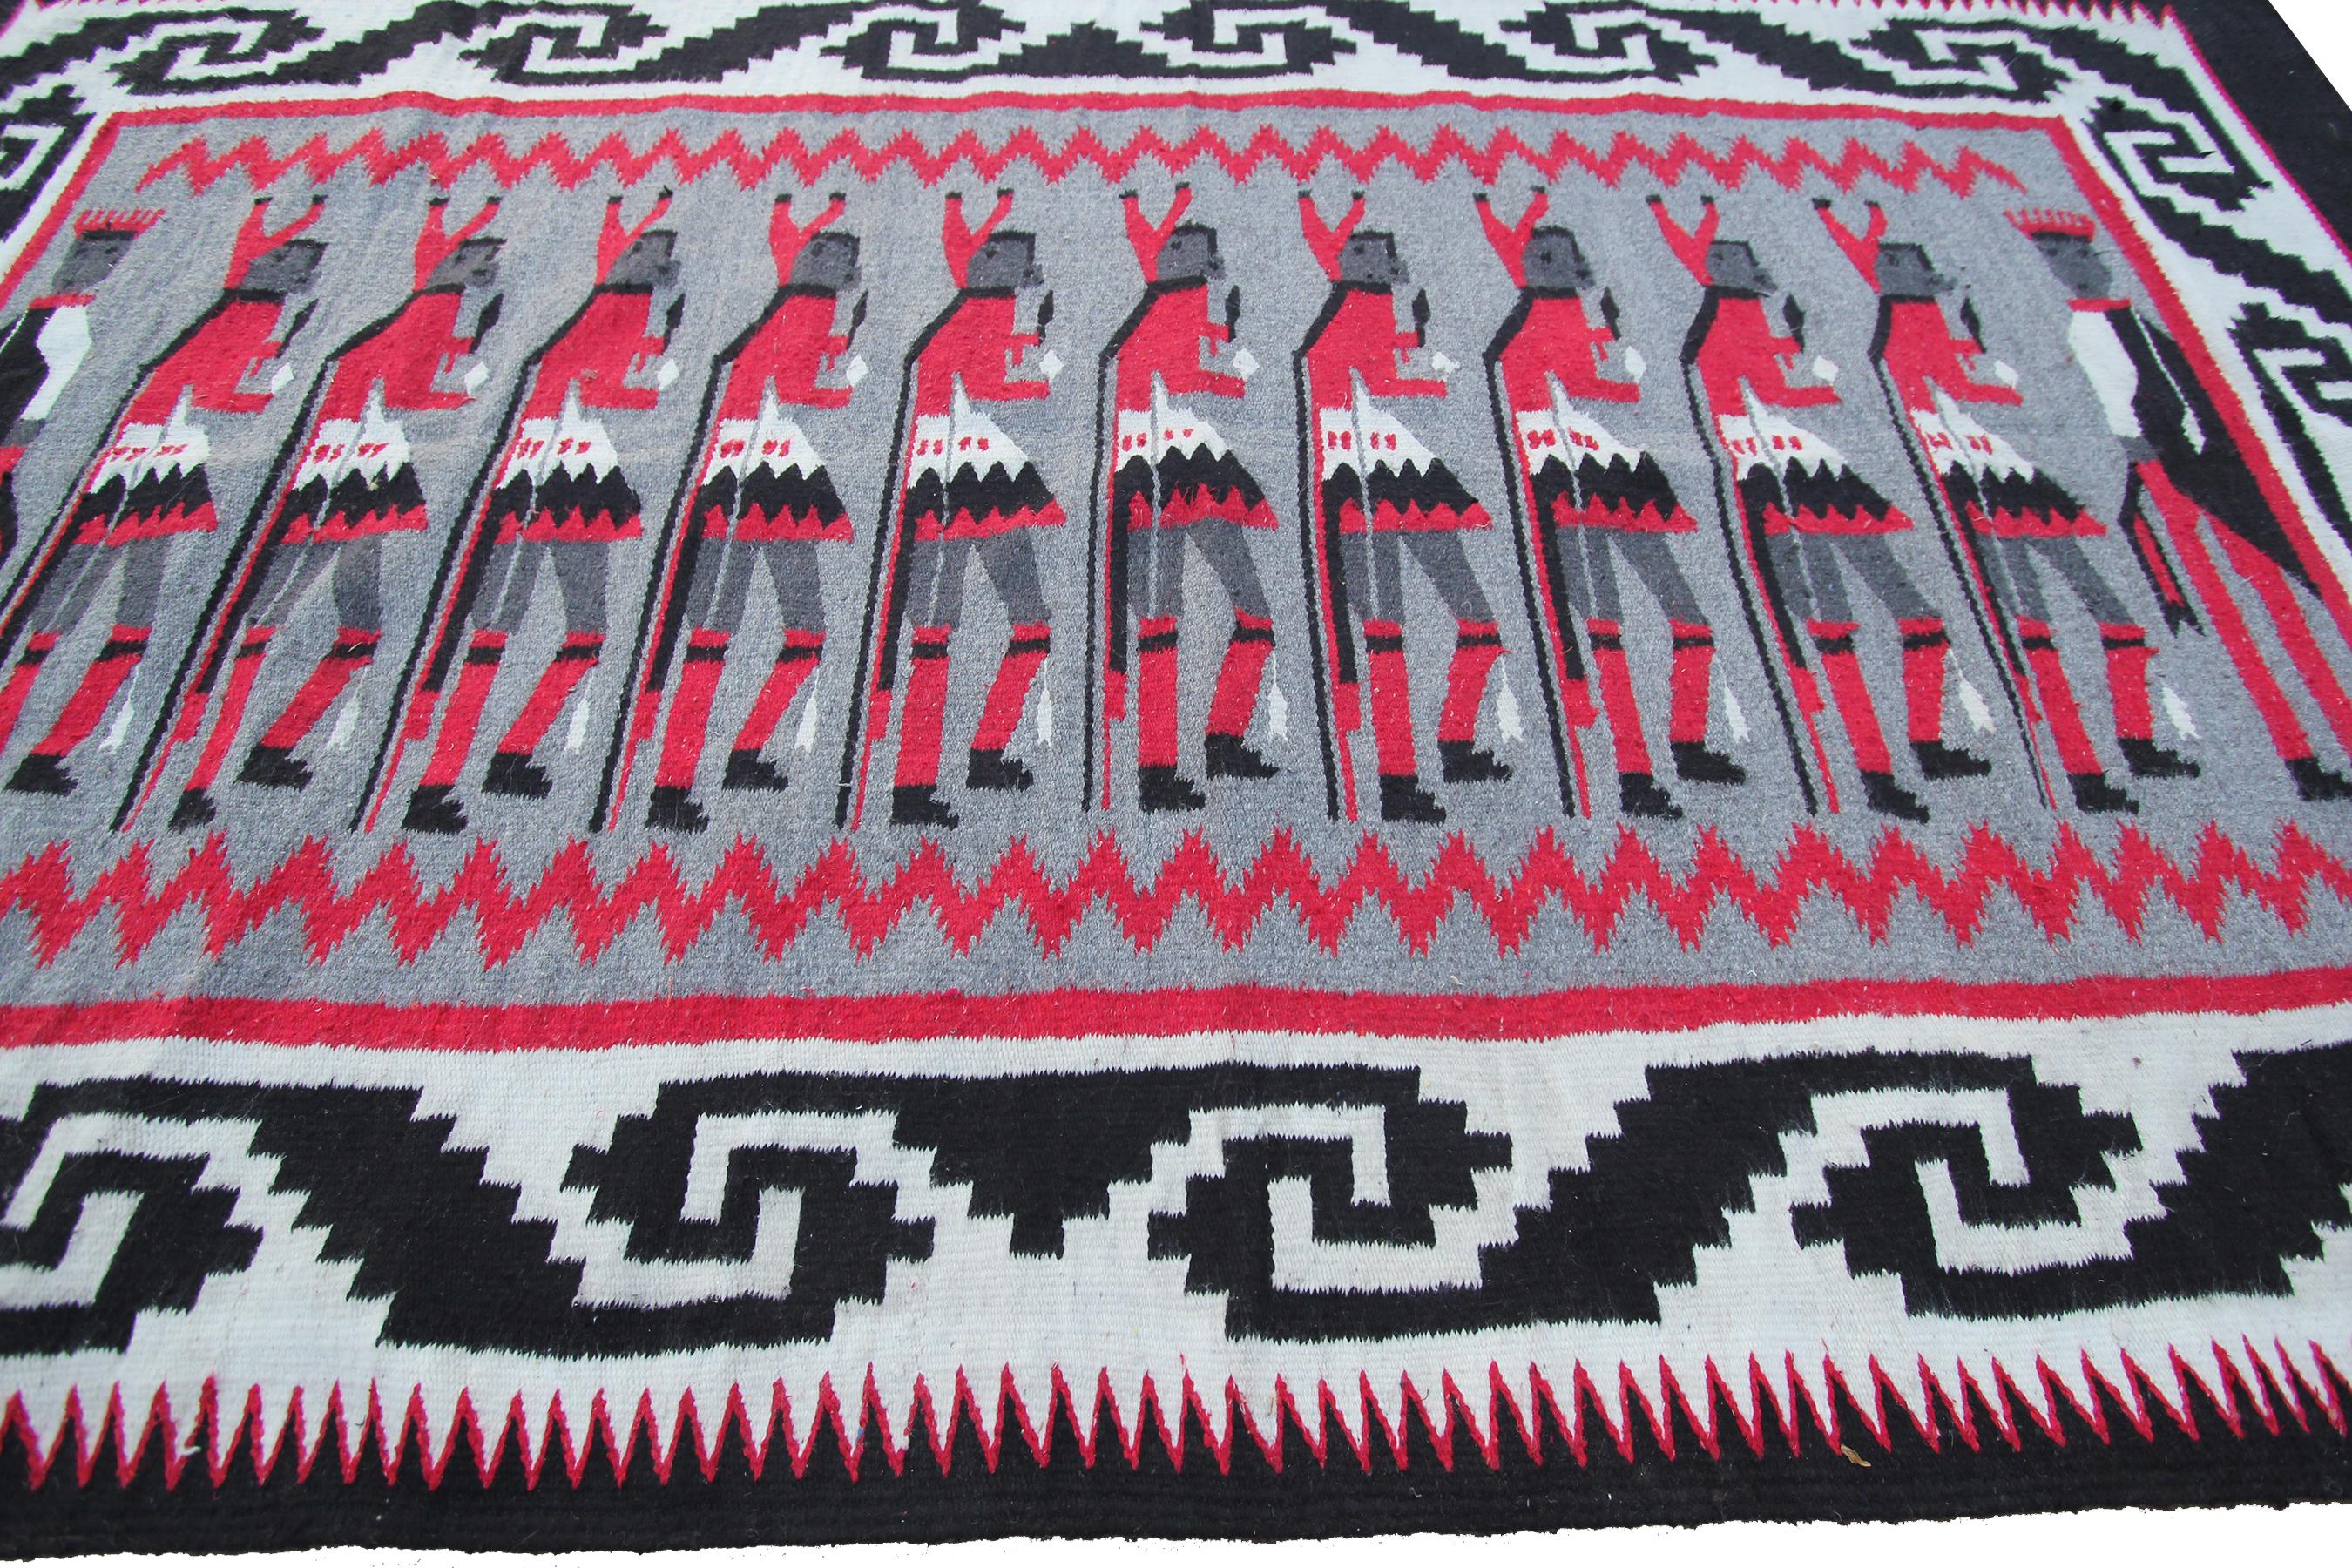 Vintage Paire de tapisseries Navajo Tapis tissé plat 8x6 8x5 

234cm 176cm 

226cm x 143cm

